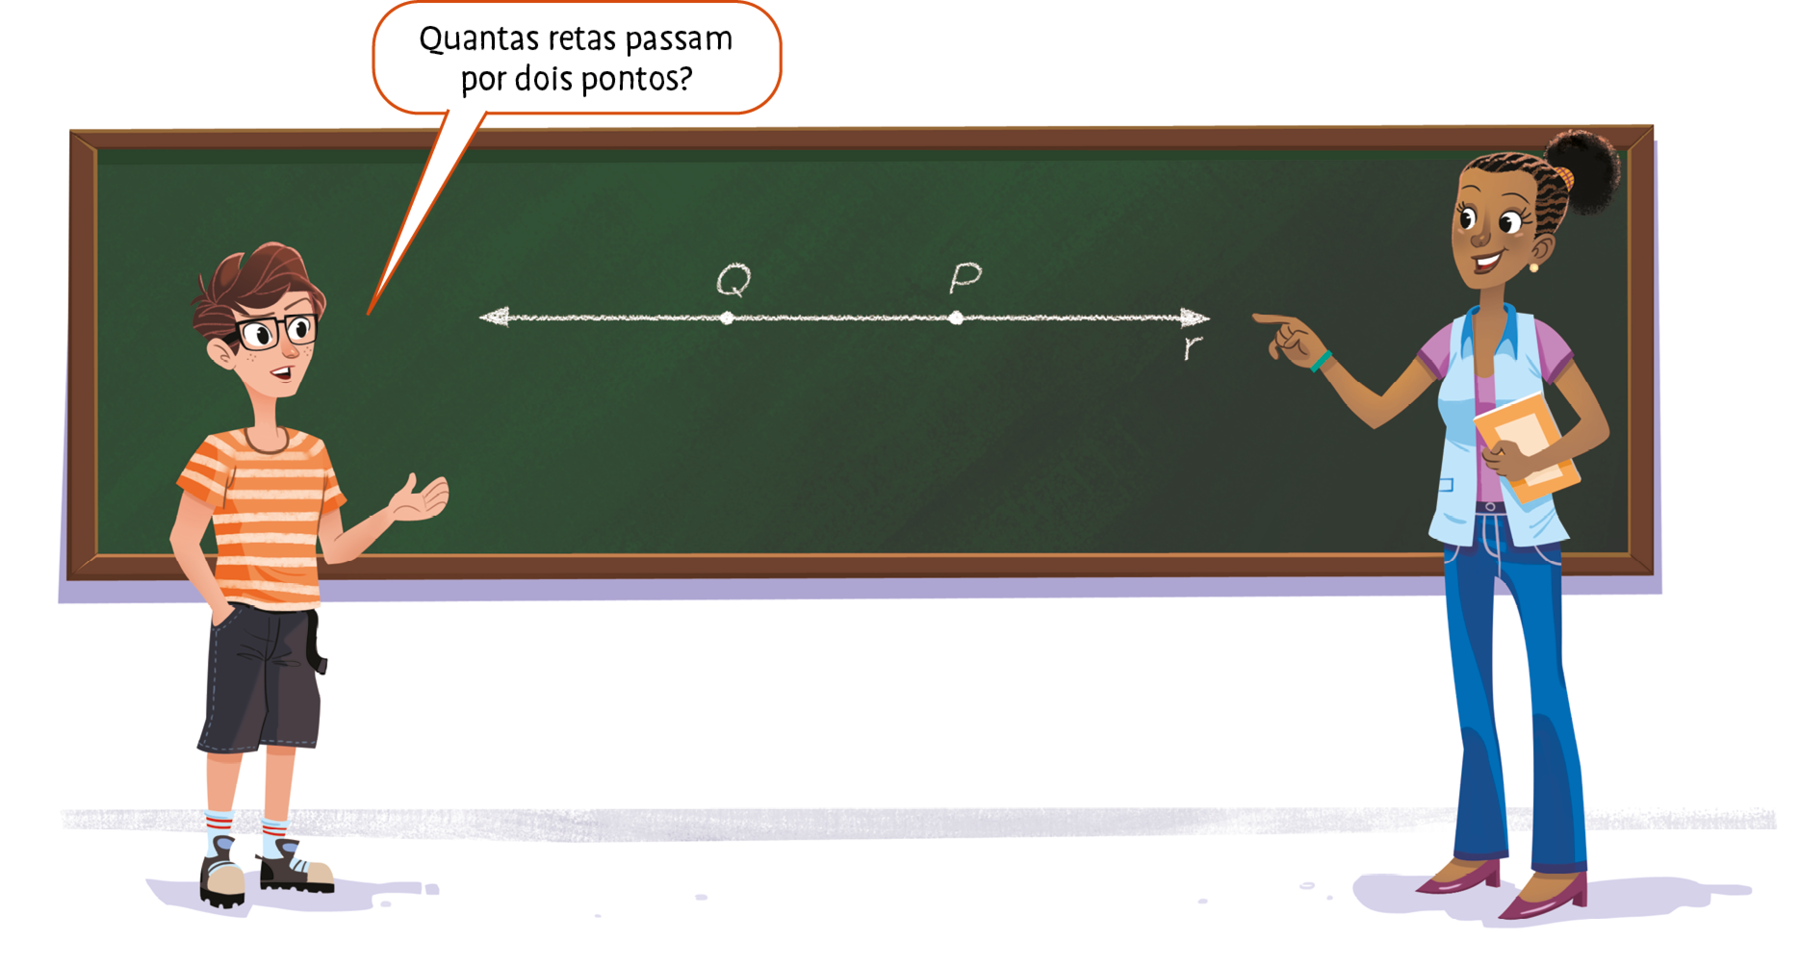 Ilustração.
Aluno e professora conversando em frente a um quadro de giz. 

No quadro, está desenhado uma reta denominada r que contem os ponto Q e P.

O aluno fala: Quantas retas passam por dois pontos?